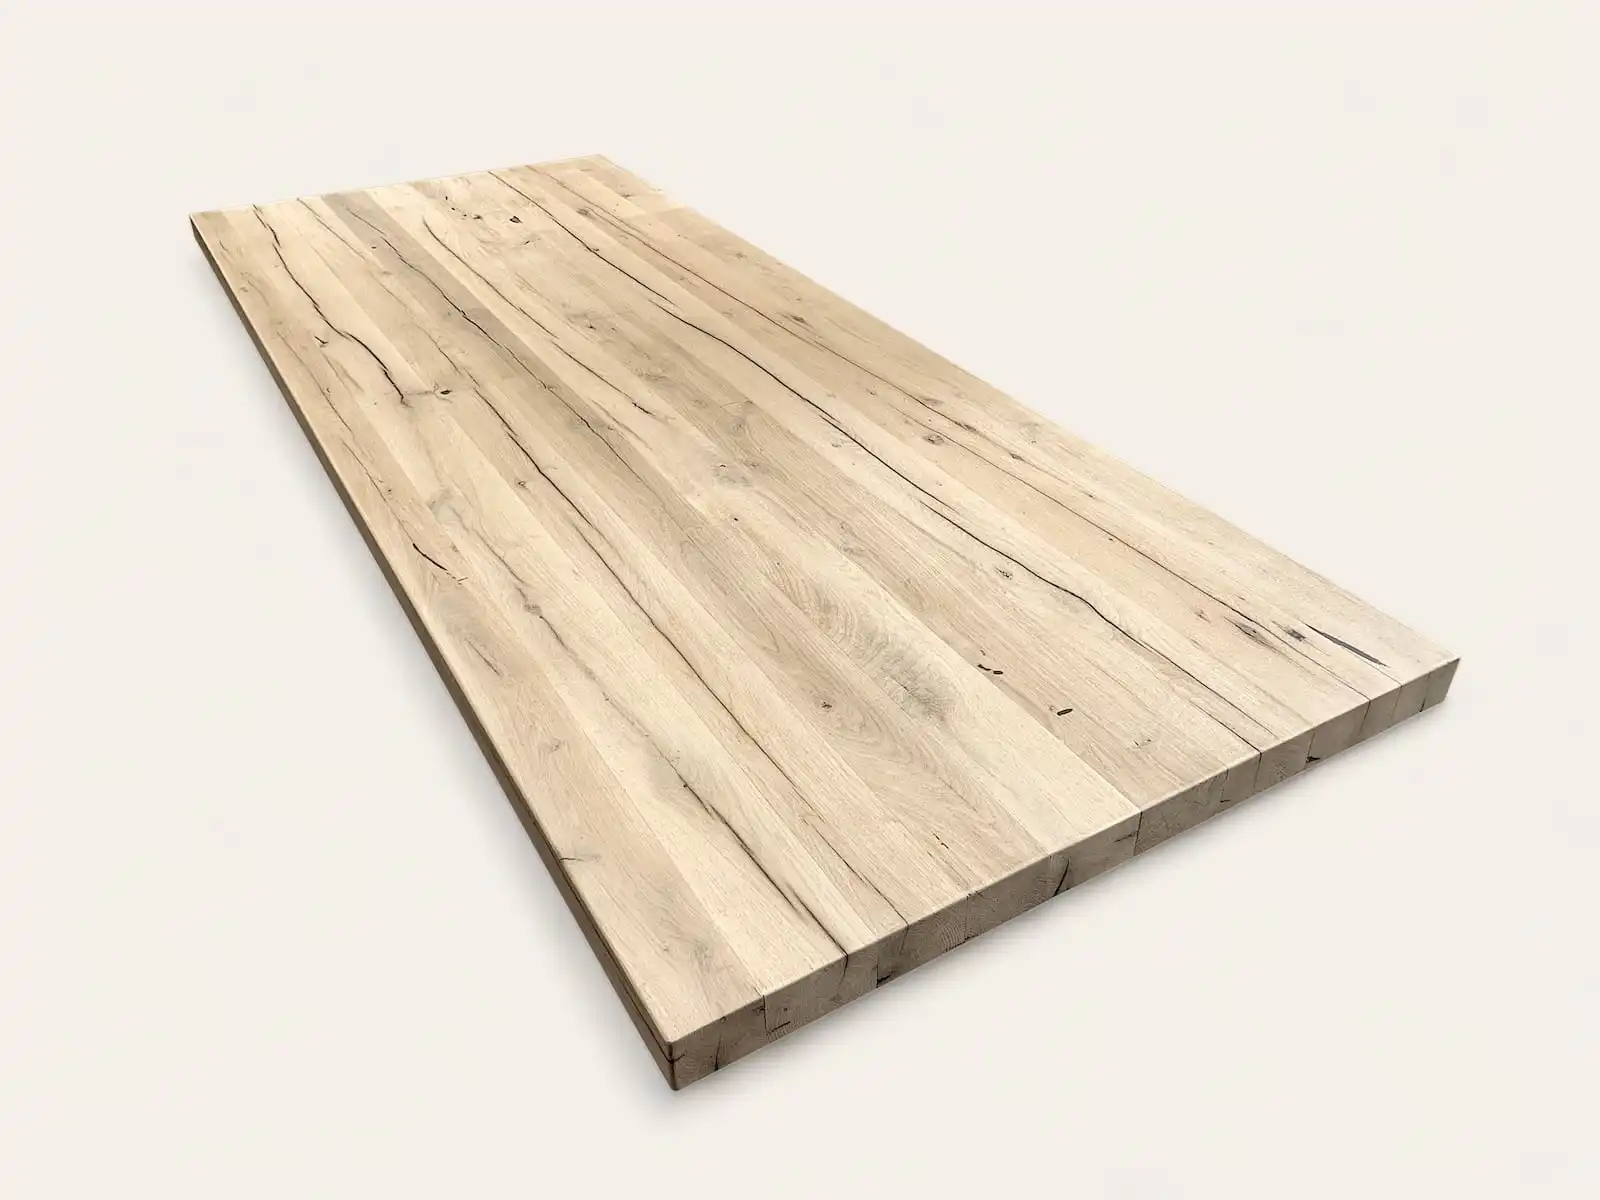  Plateau de table rectangulaire en bois ancien aux tons clairs et naturels, évoquant simplicité et durabilité pour un intérieur authentique. 